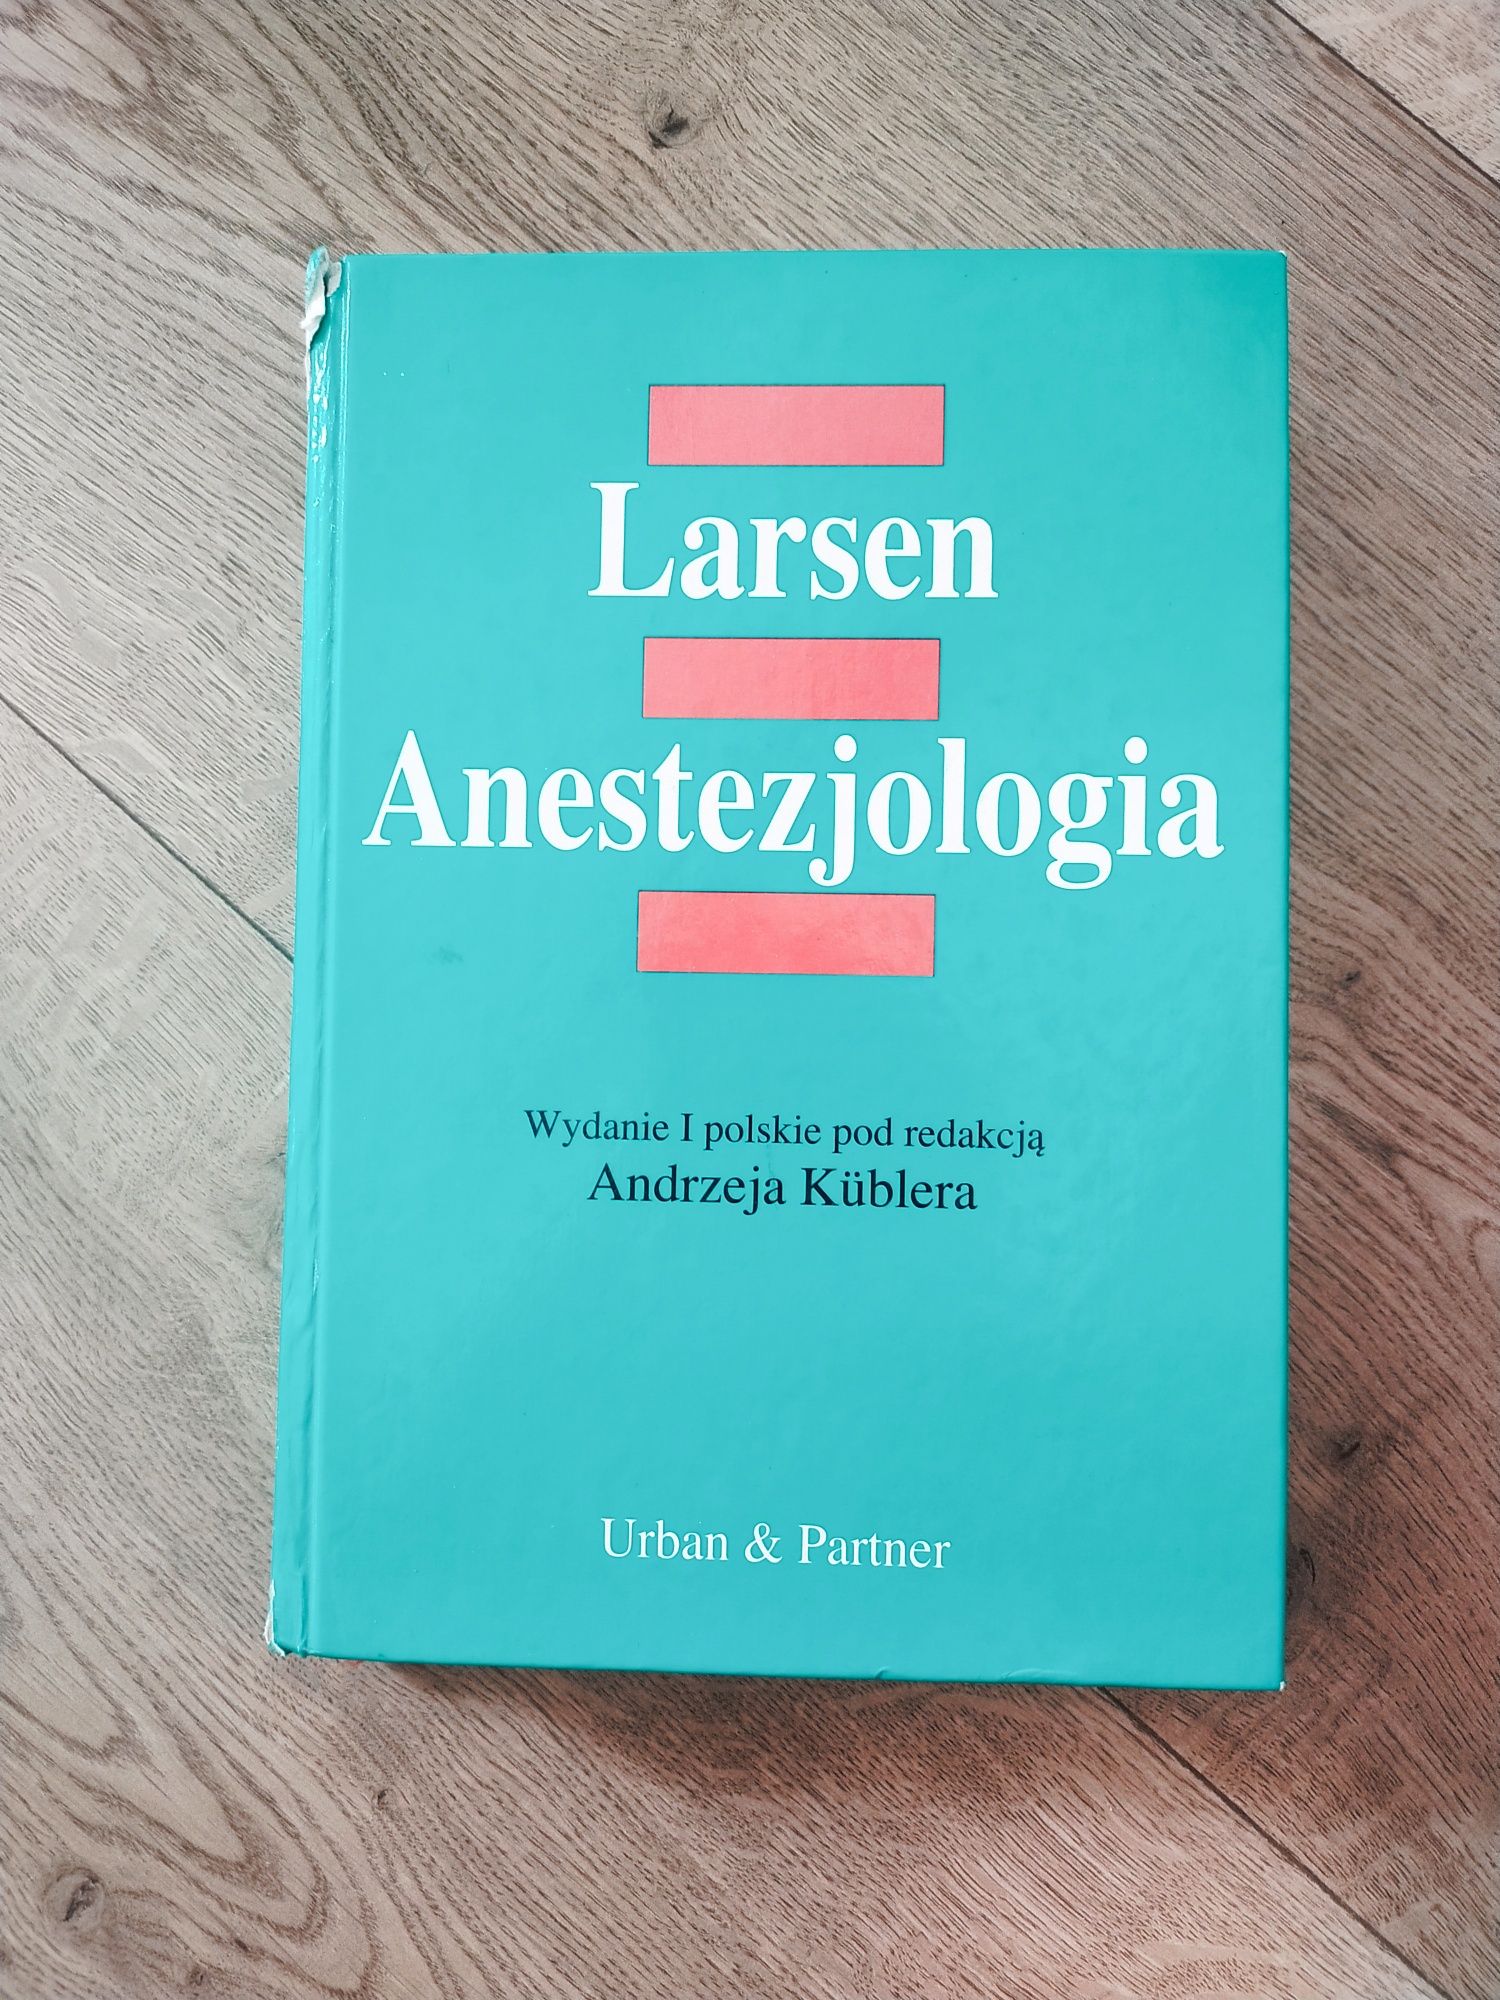 Larsen Anestezjologia wydanie 1 polskie